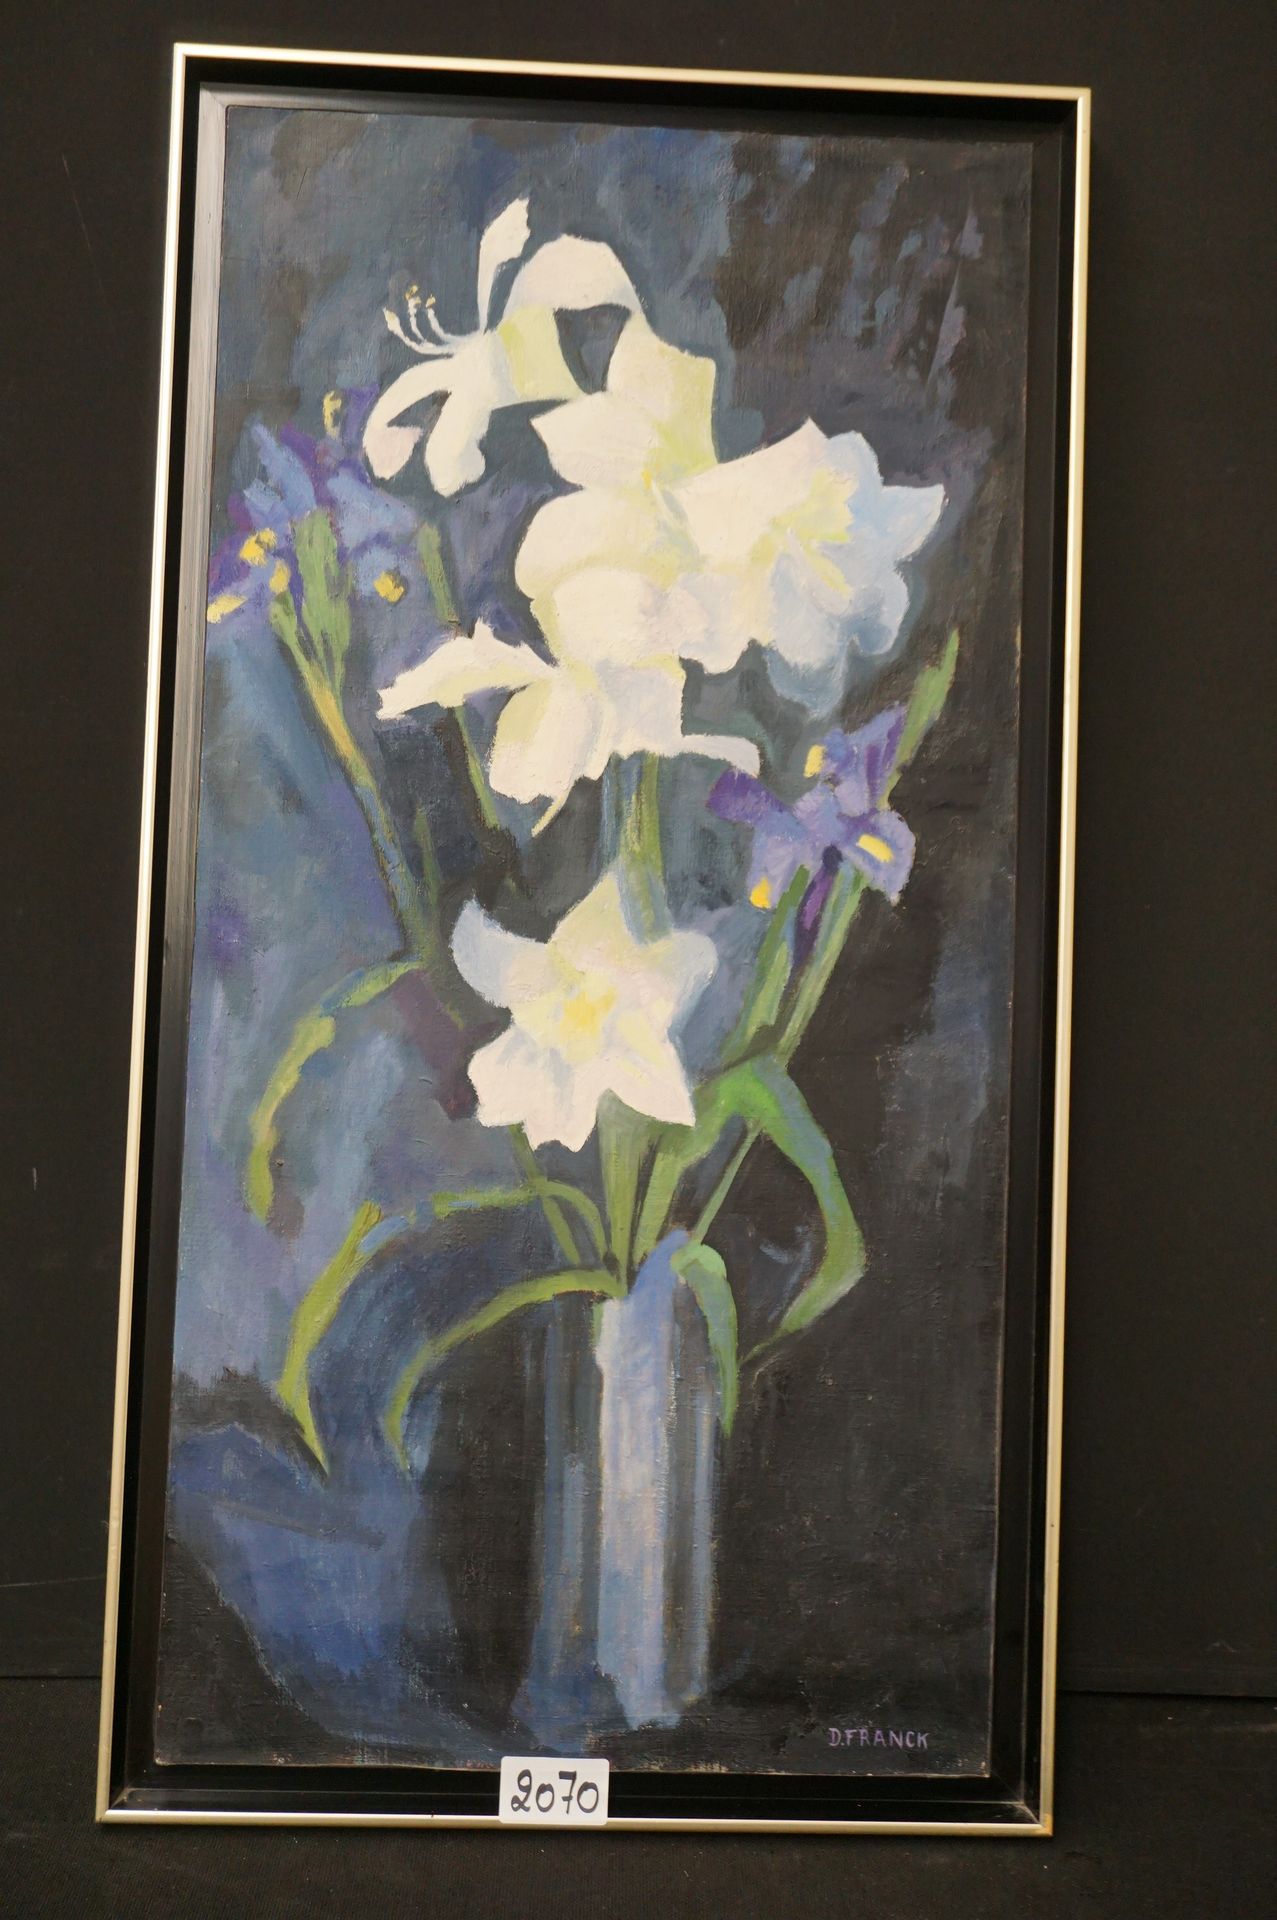 D. FRANCK "Fleurs" - Huile sur toile - Signé - 100 x 50 cm